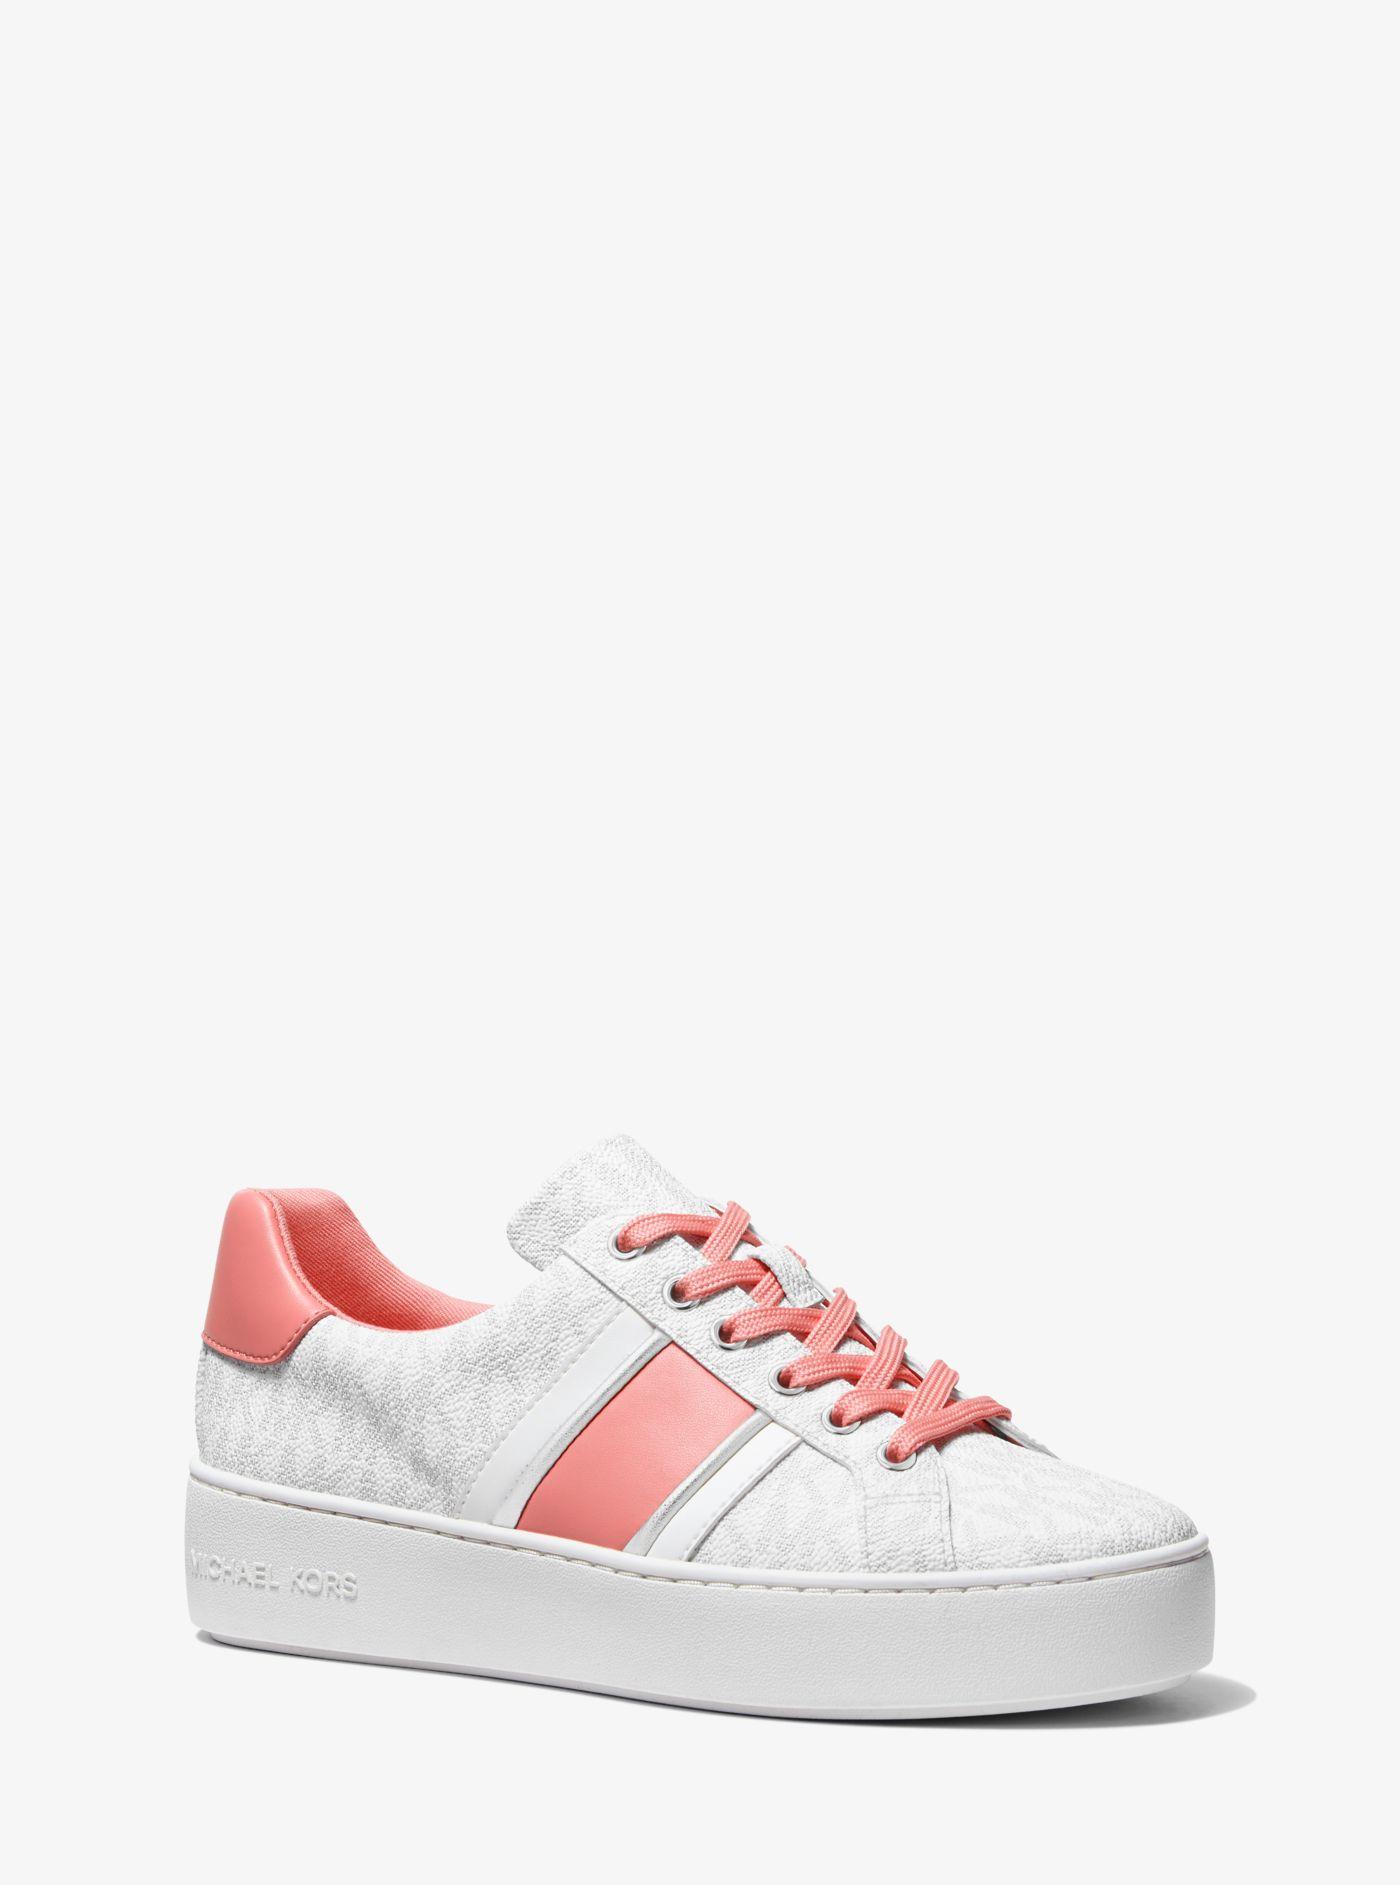 Michael Kors Poppy Logo Stripe Sneaker in Pink | Lyst